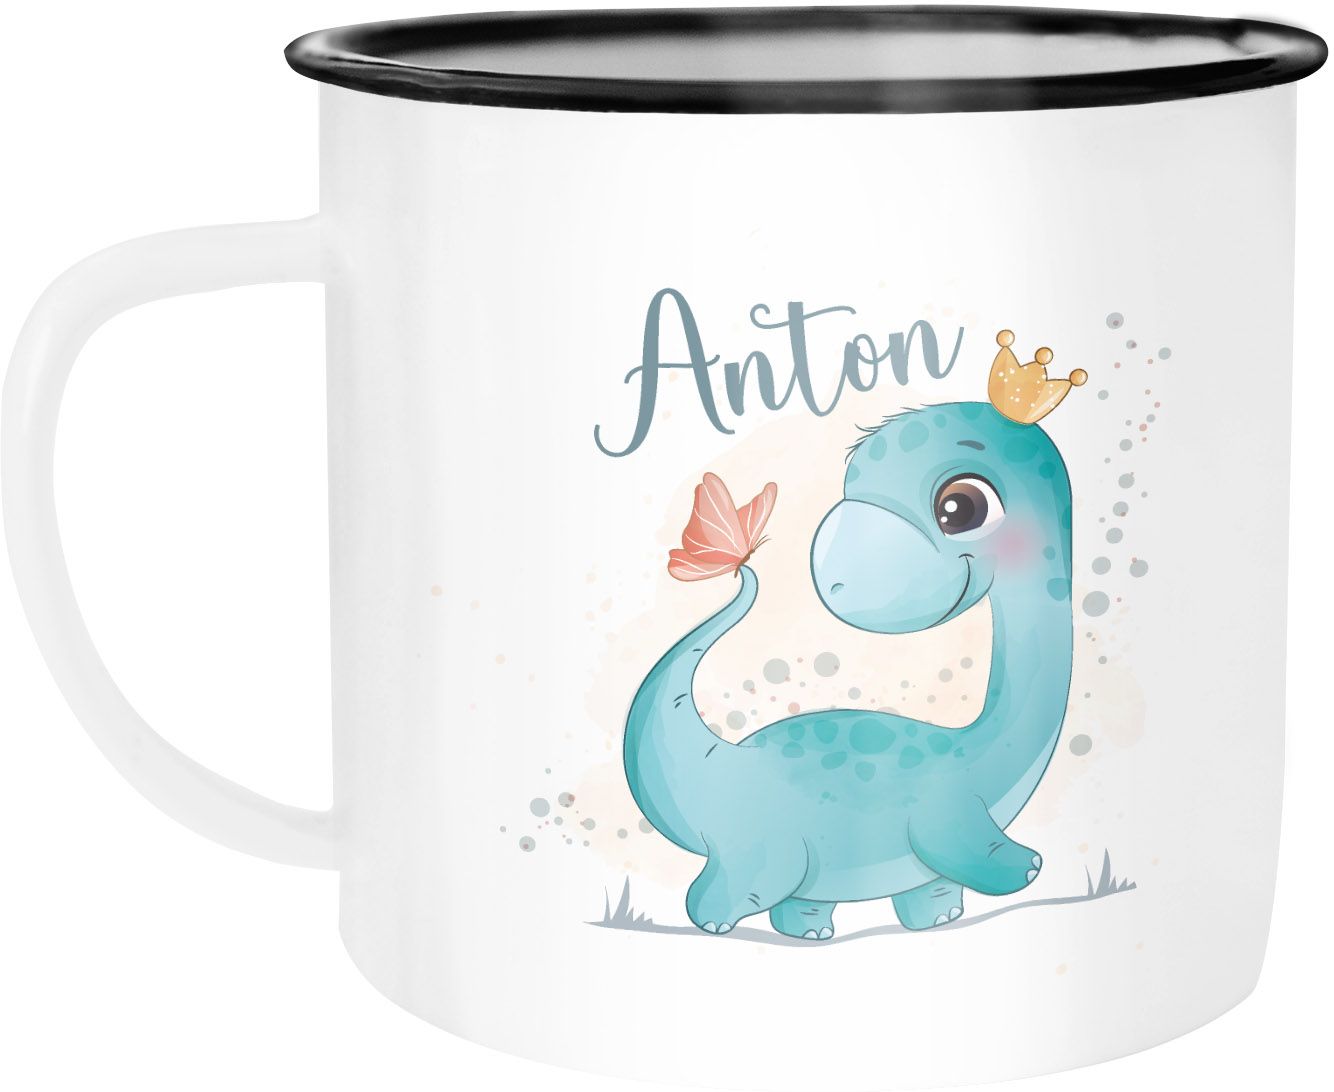 Kinder-Tasse Emaille Dino Dinosaurier Schmetterling personalisierte Tasse mit Name  individuelle Geschenke SpecialMe®